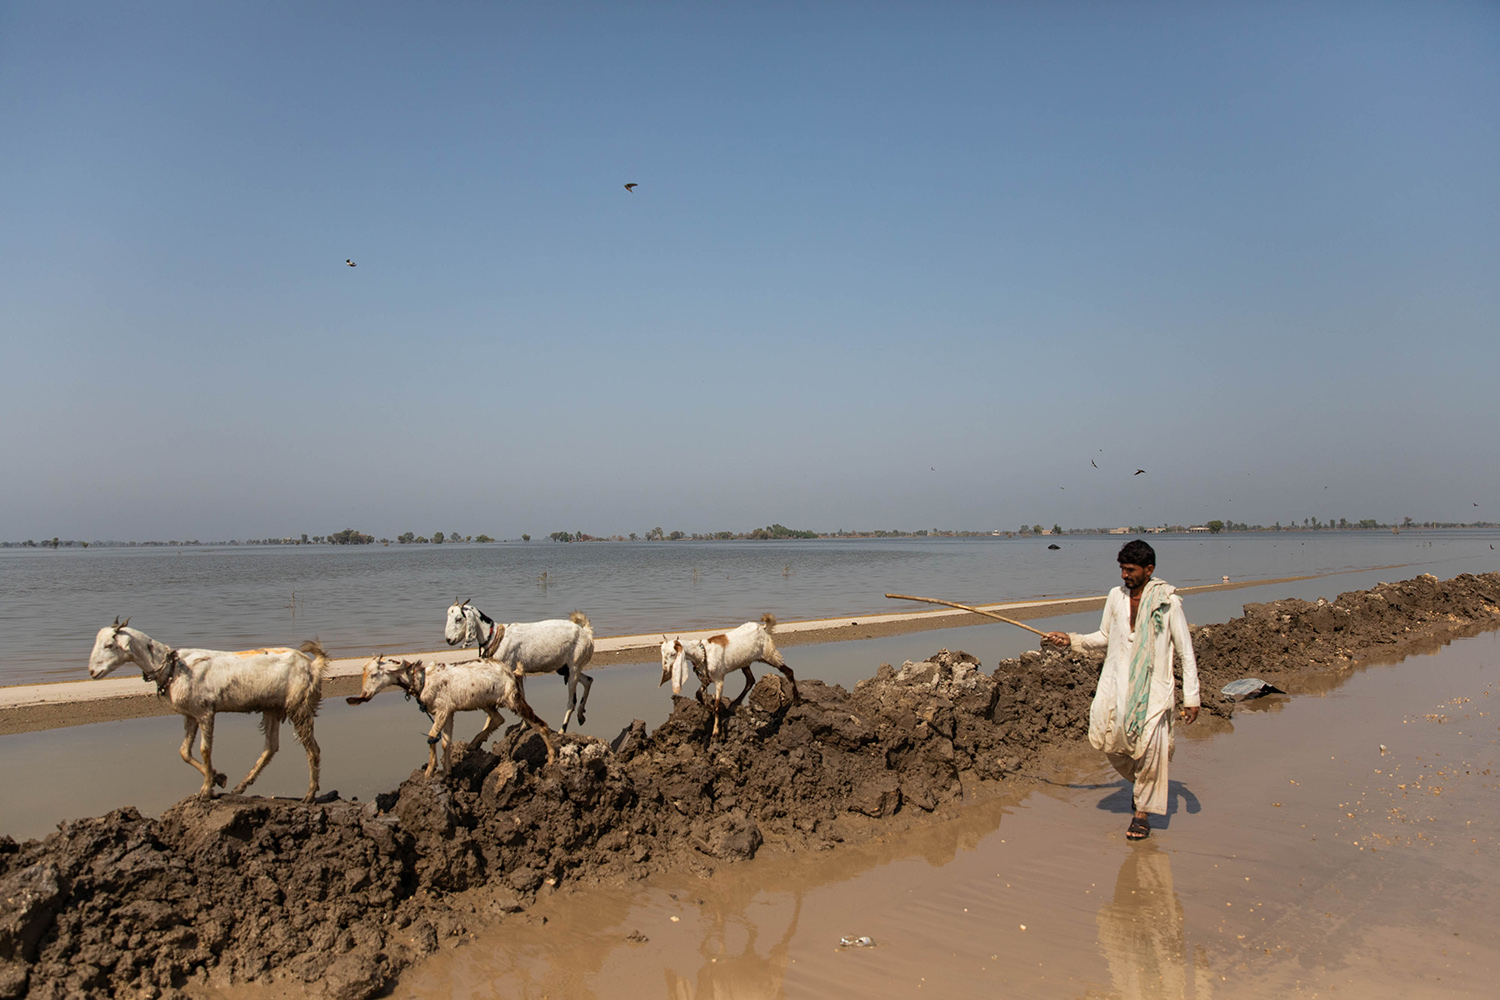 Un hombre conduce cabras a lo largo de una inundación en Pakistán.